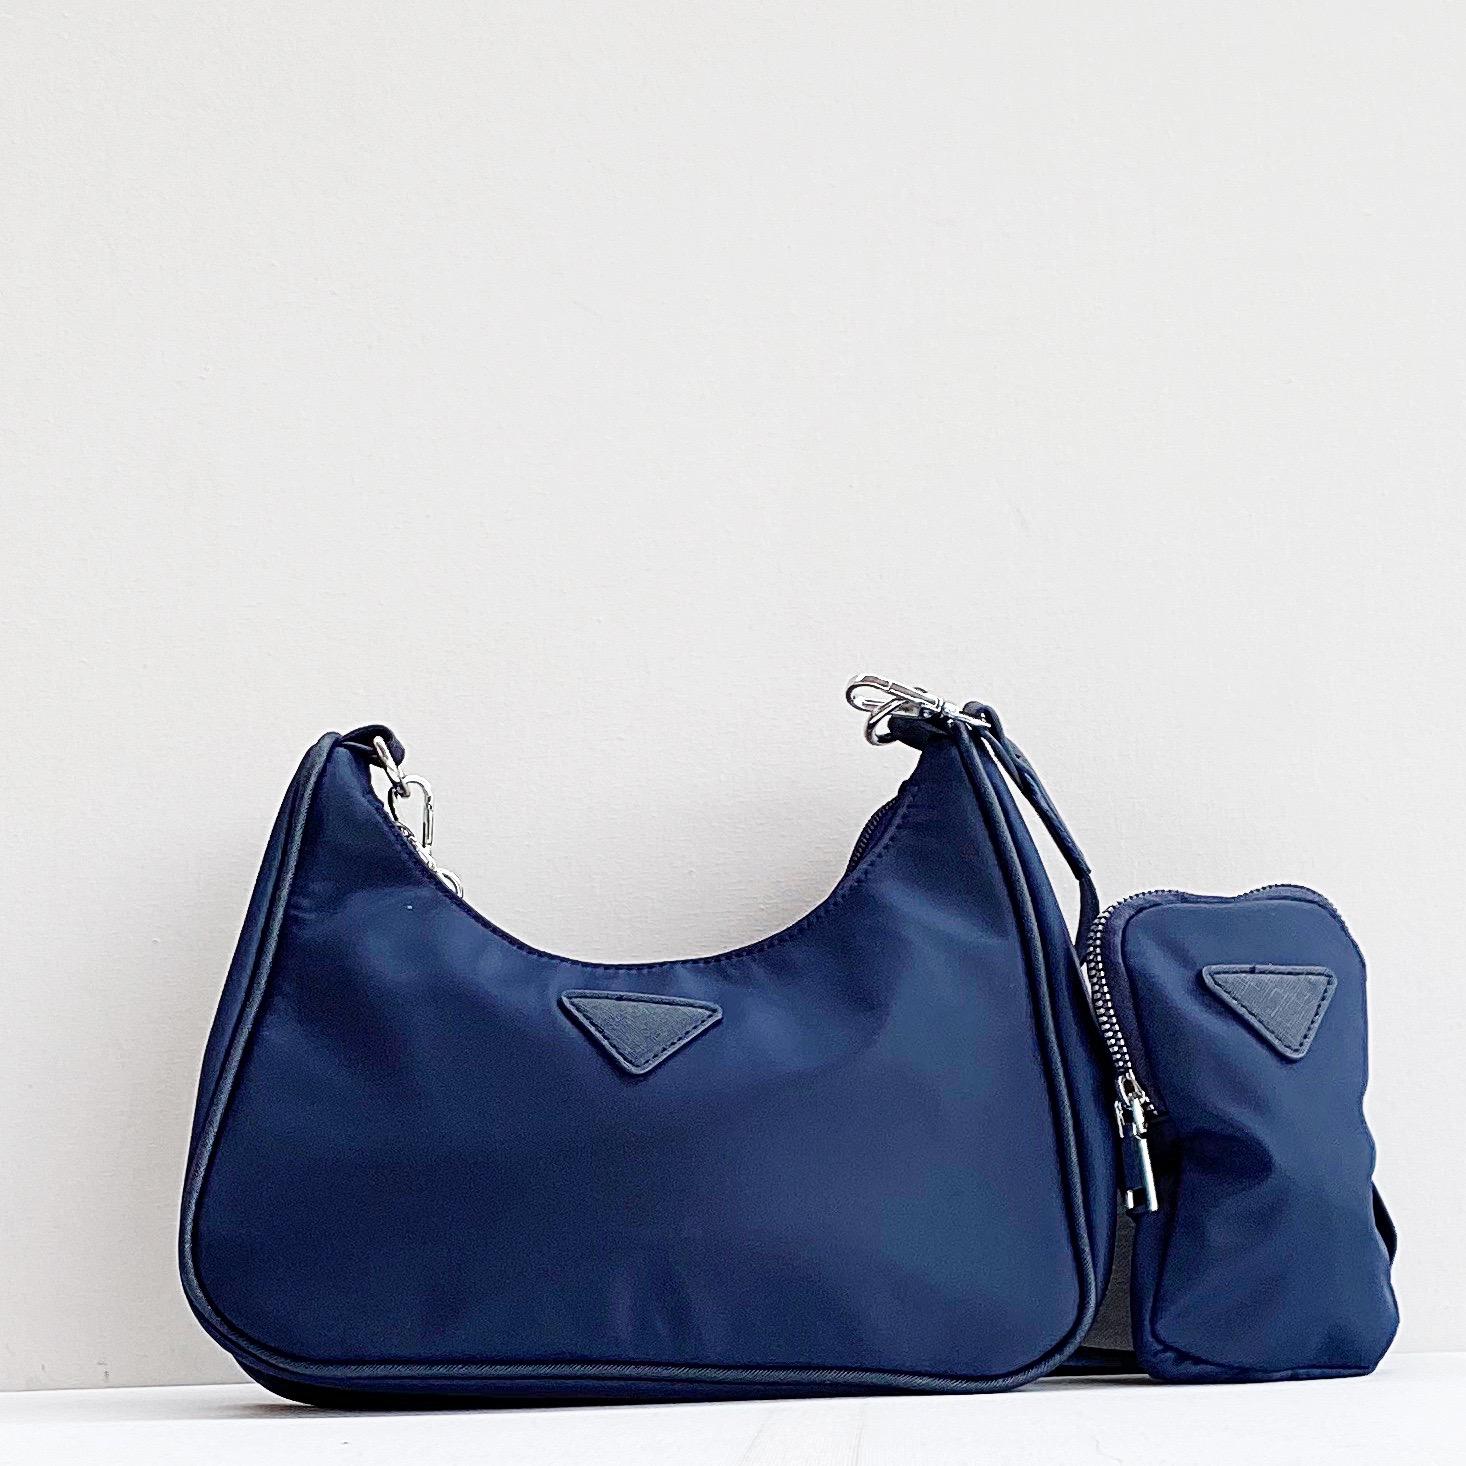 Comprar estilo Prada nylon azul Online - Entrega 24-48h